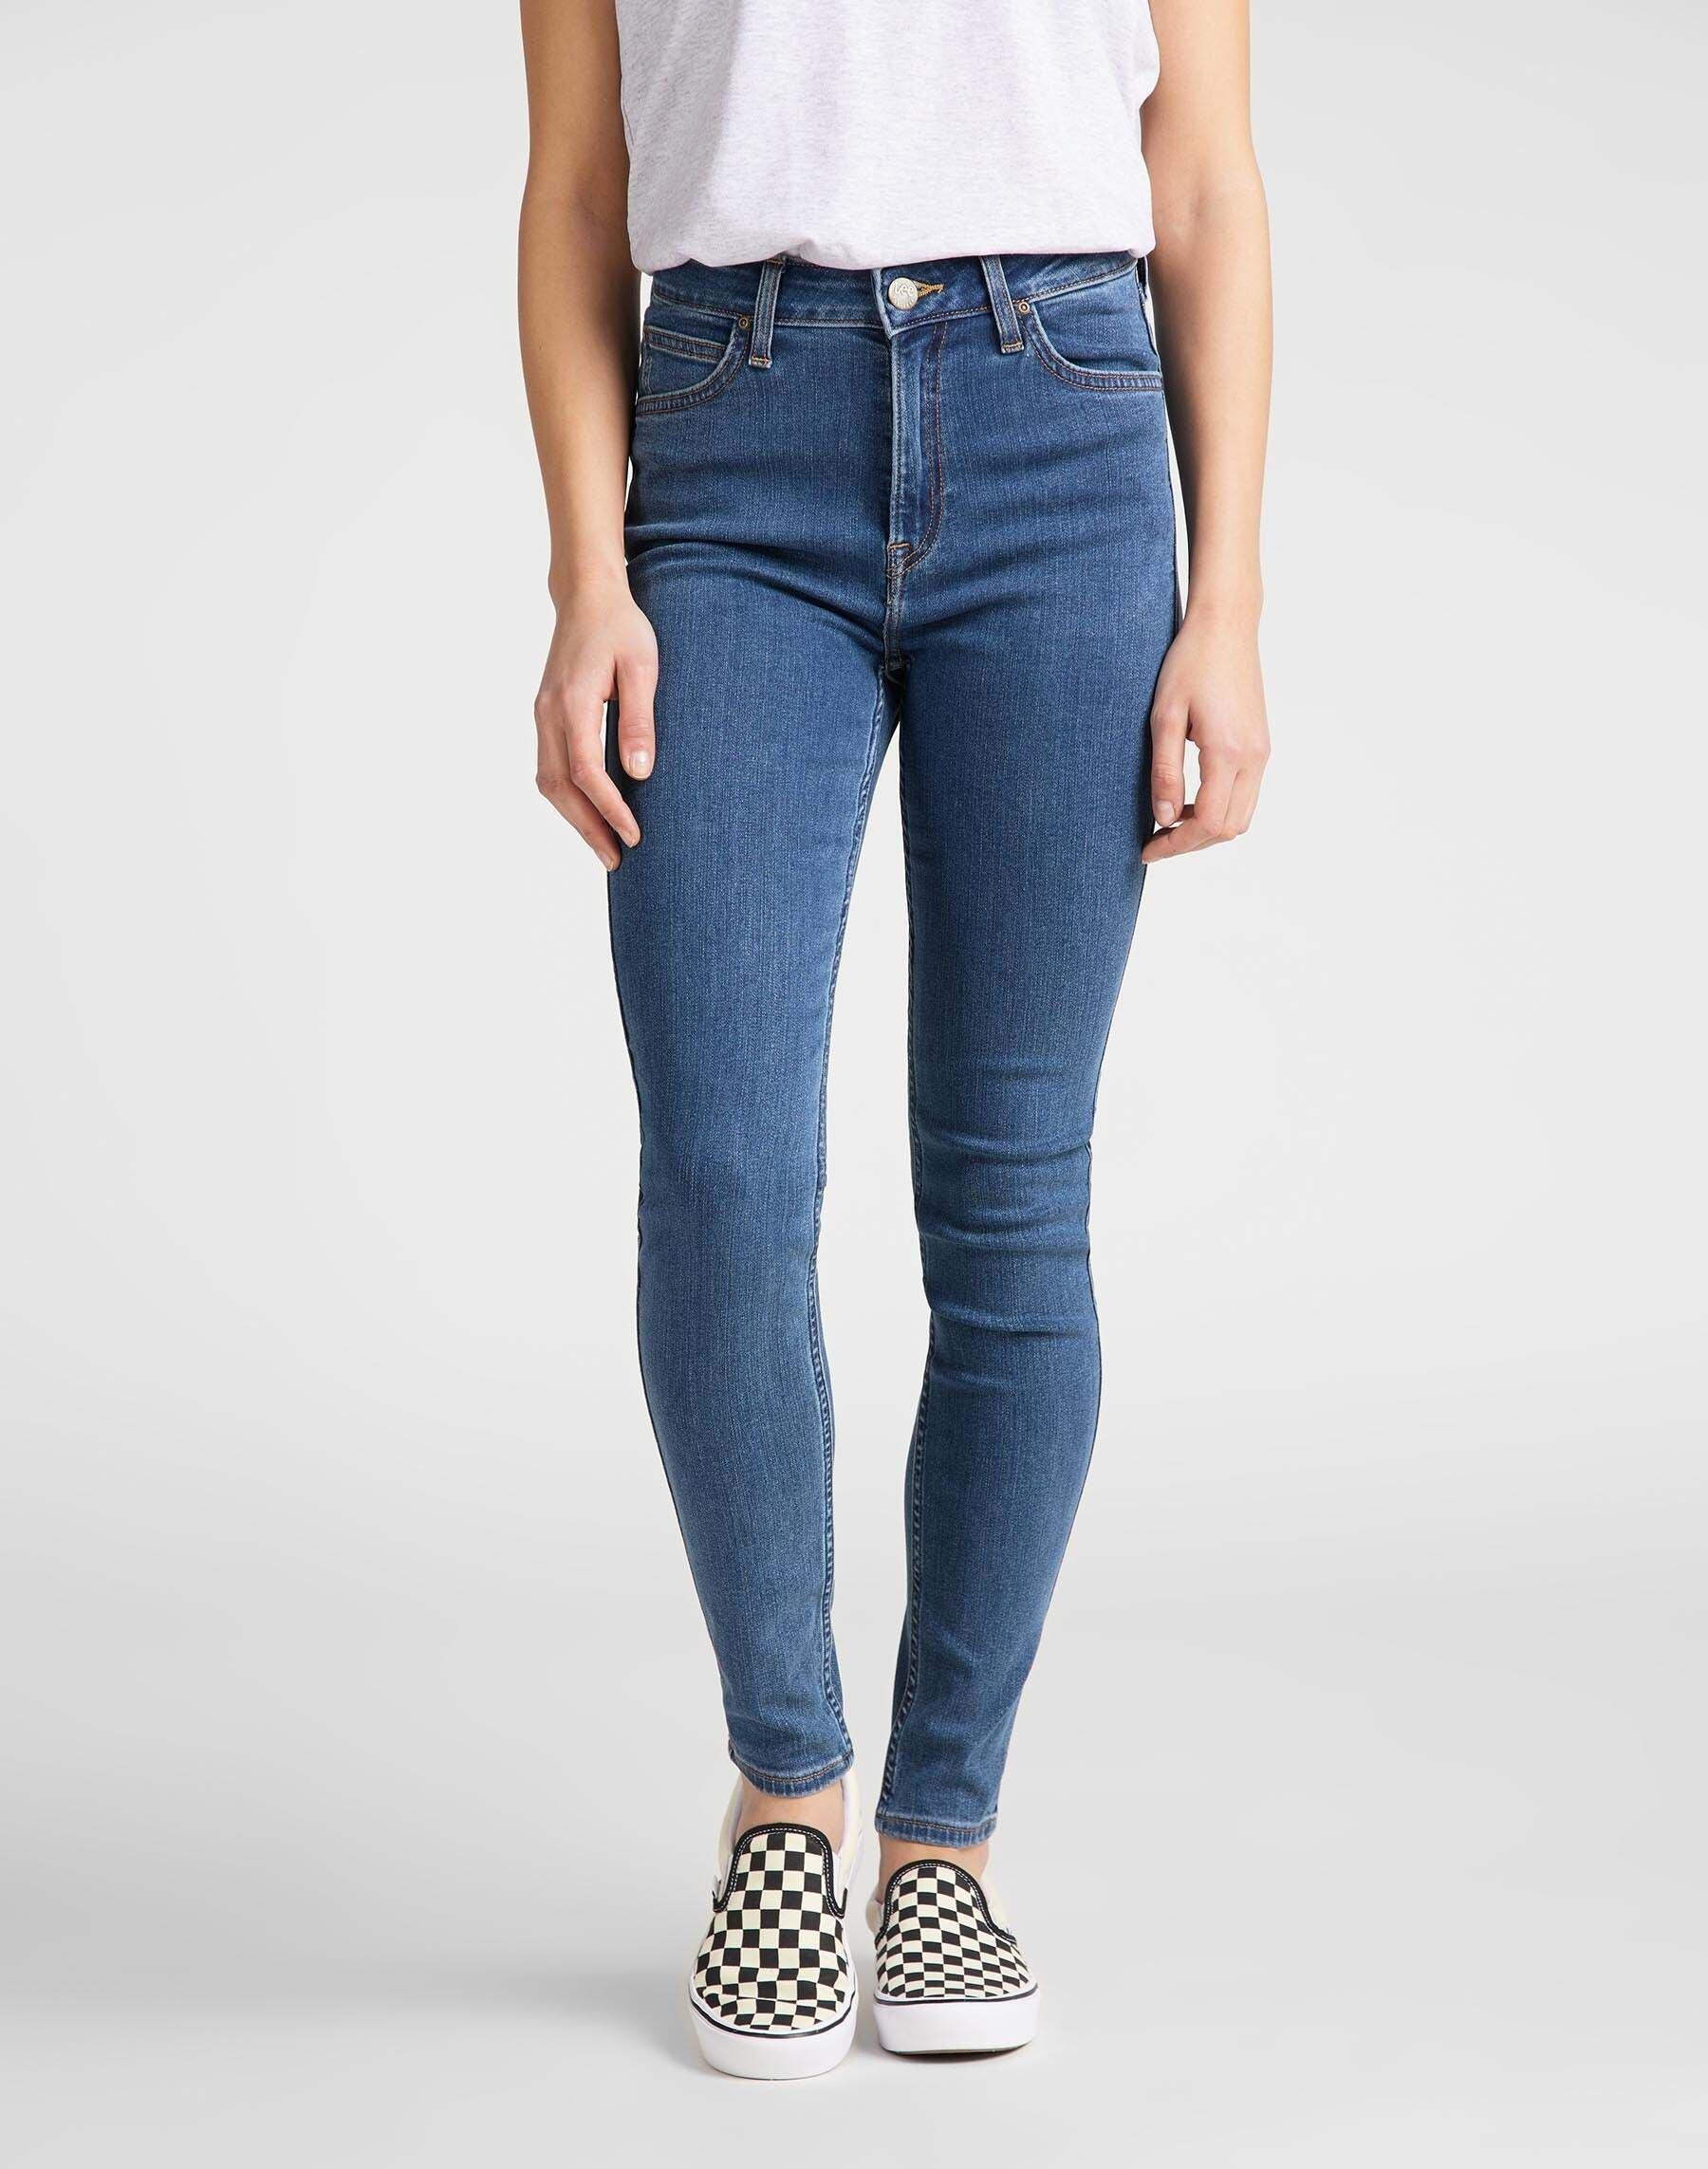 Jeans Super Skinny Fit Ivy High Waist Damen Blau Denim L31/W24 von Lee